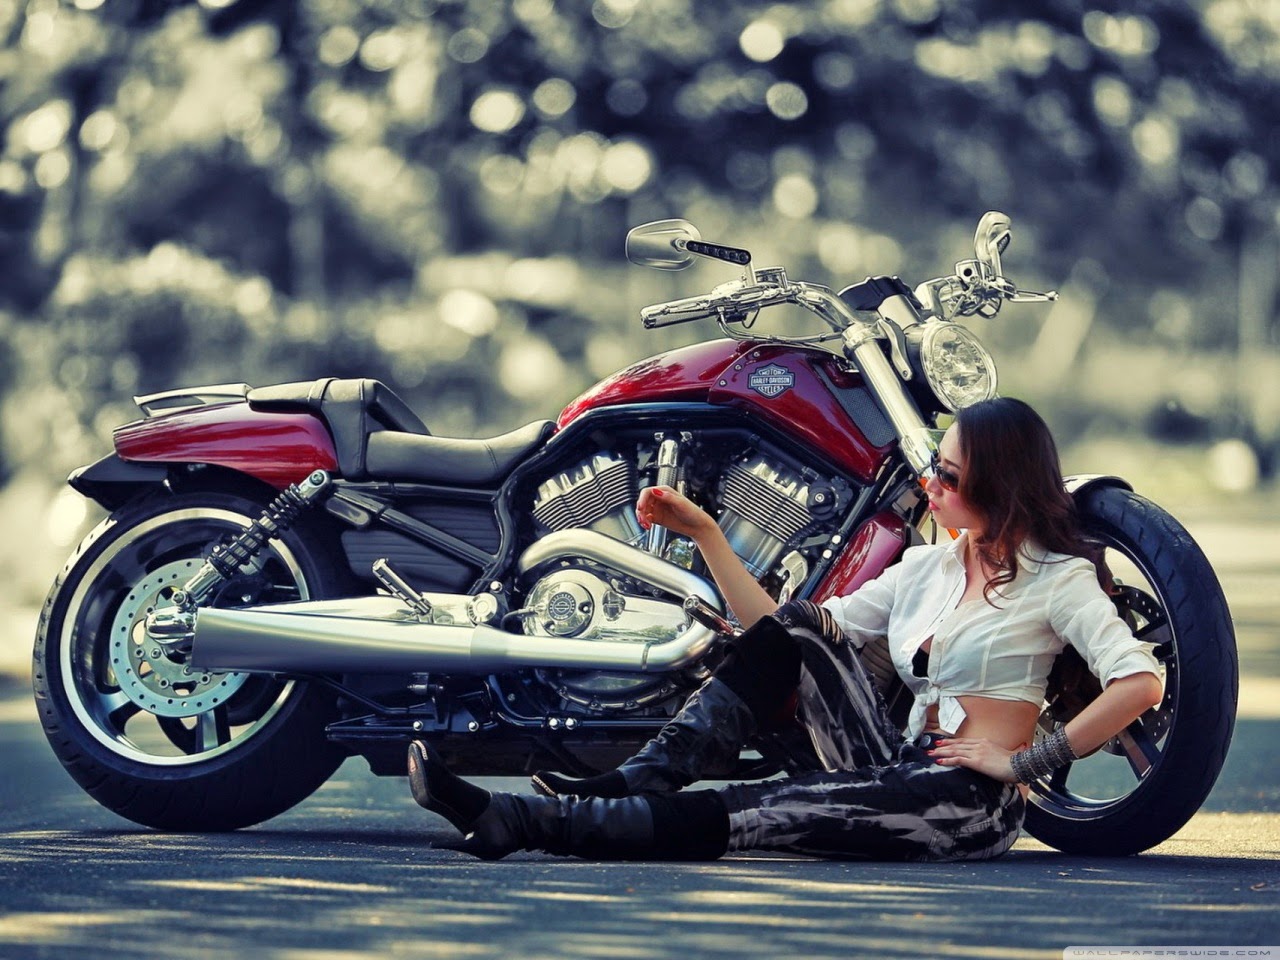 motorcycle girl wallpaper,land vehicle,motorcycle,vehicle,motor vehicle,cruiser